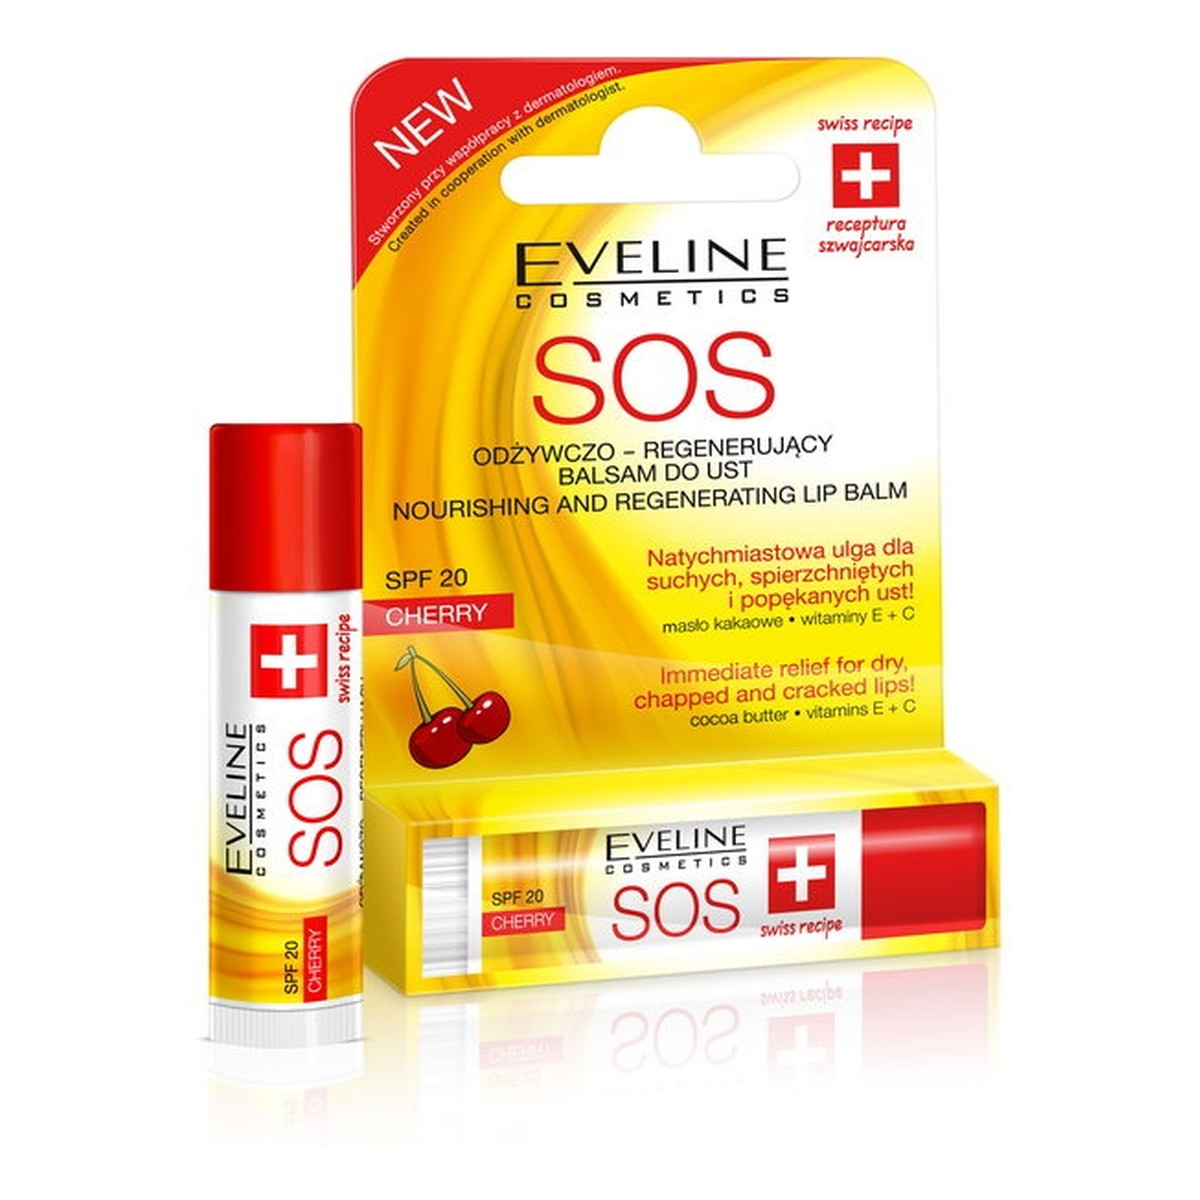 Eveline SOS Argan Oil Odżywczo – Regenerujący Balsam Do Ust Cherry